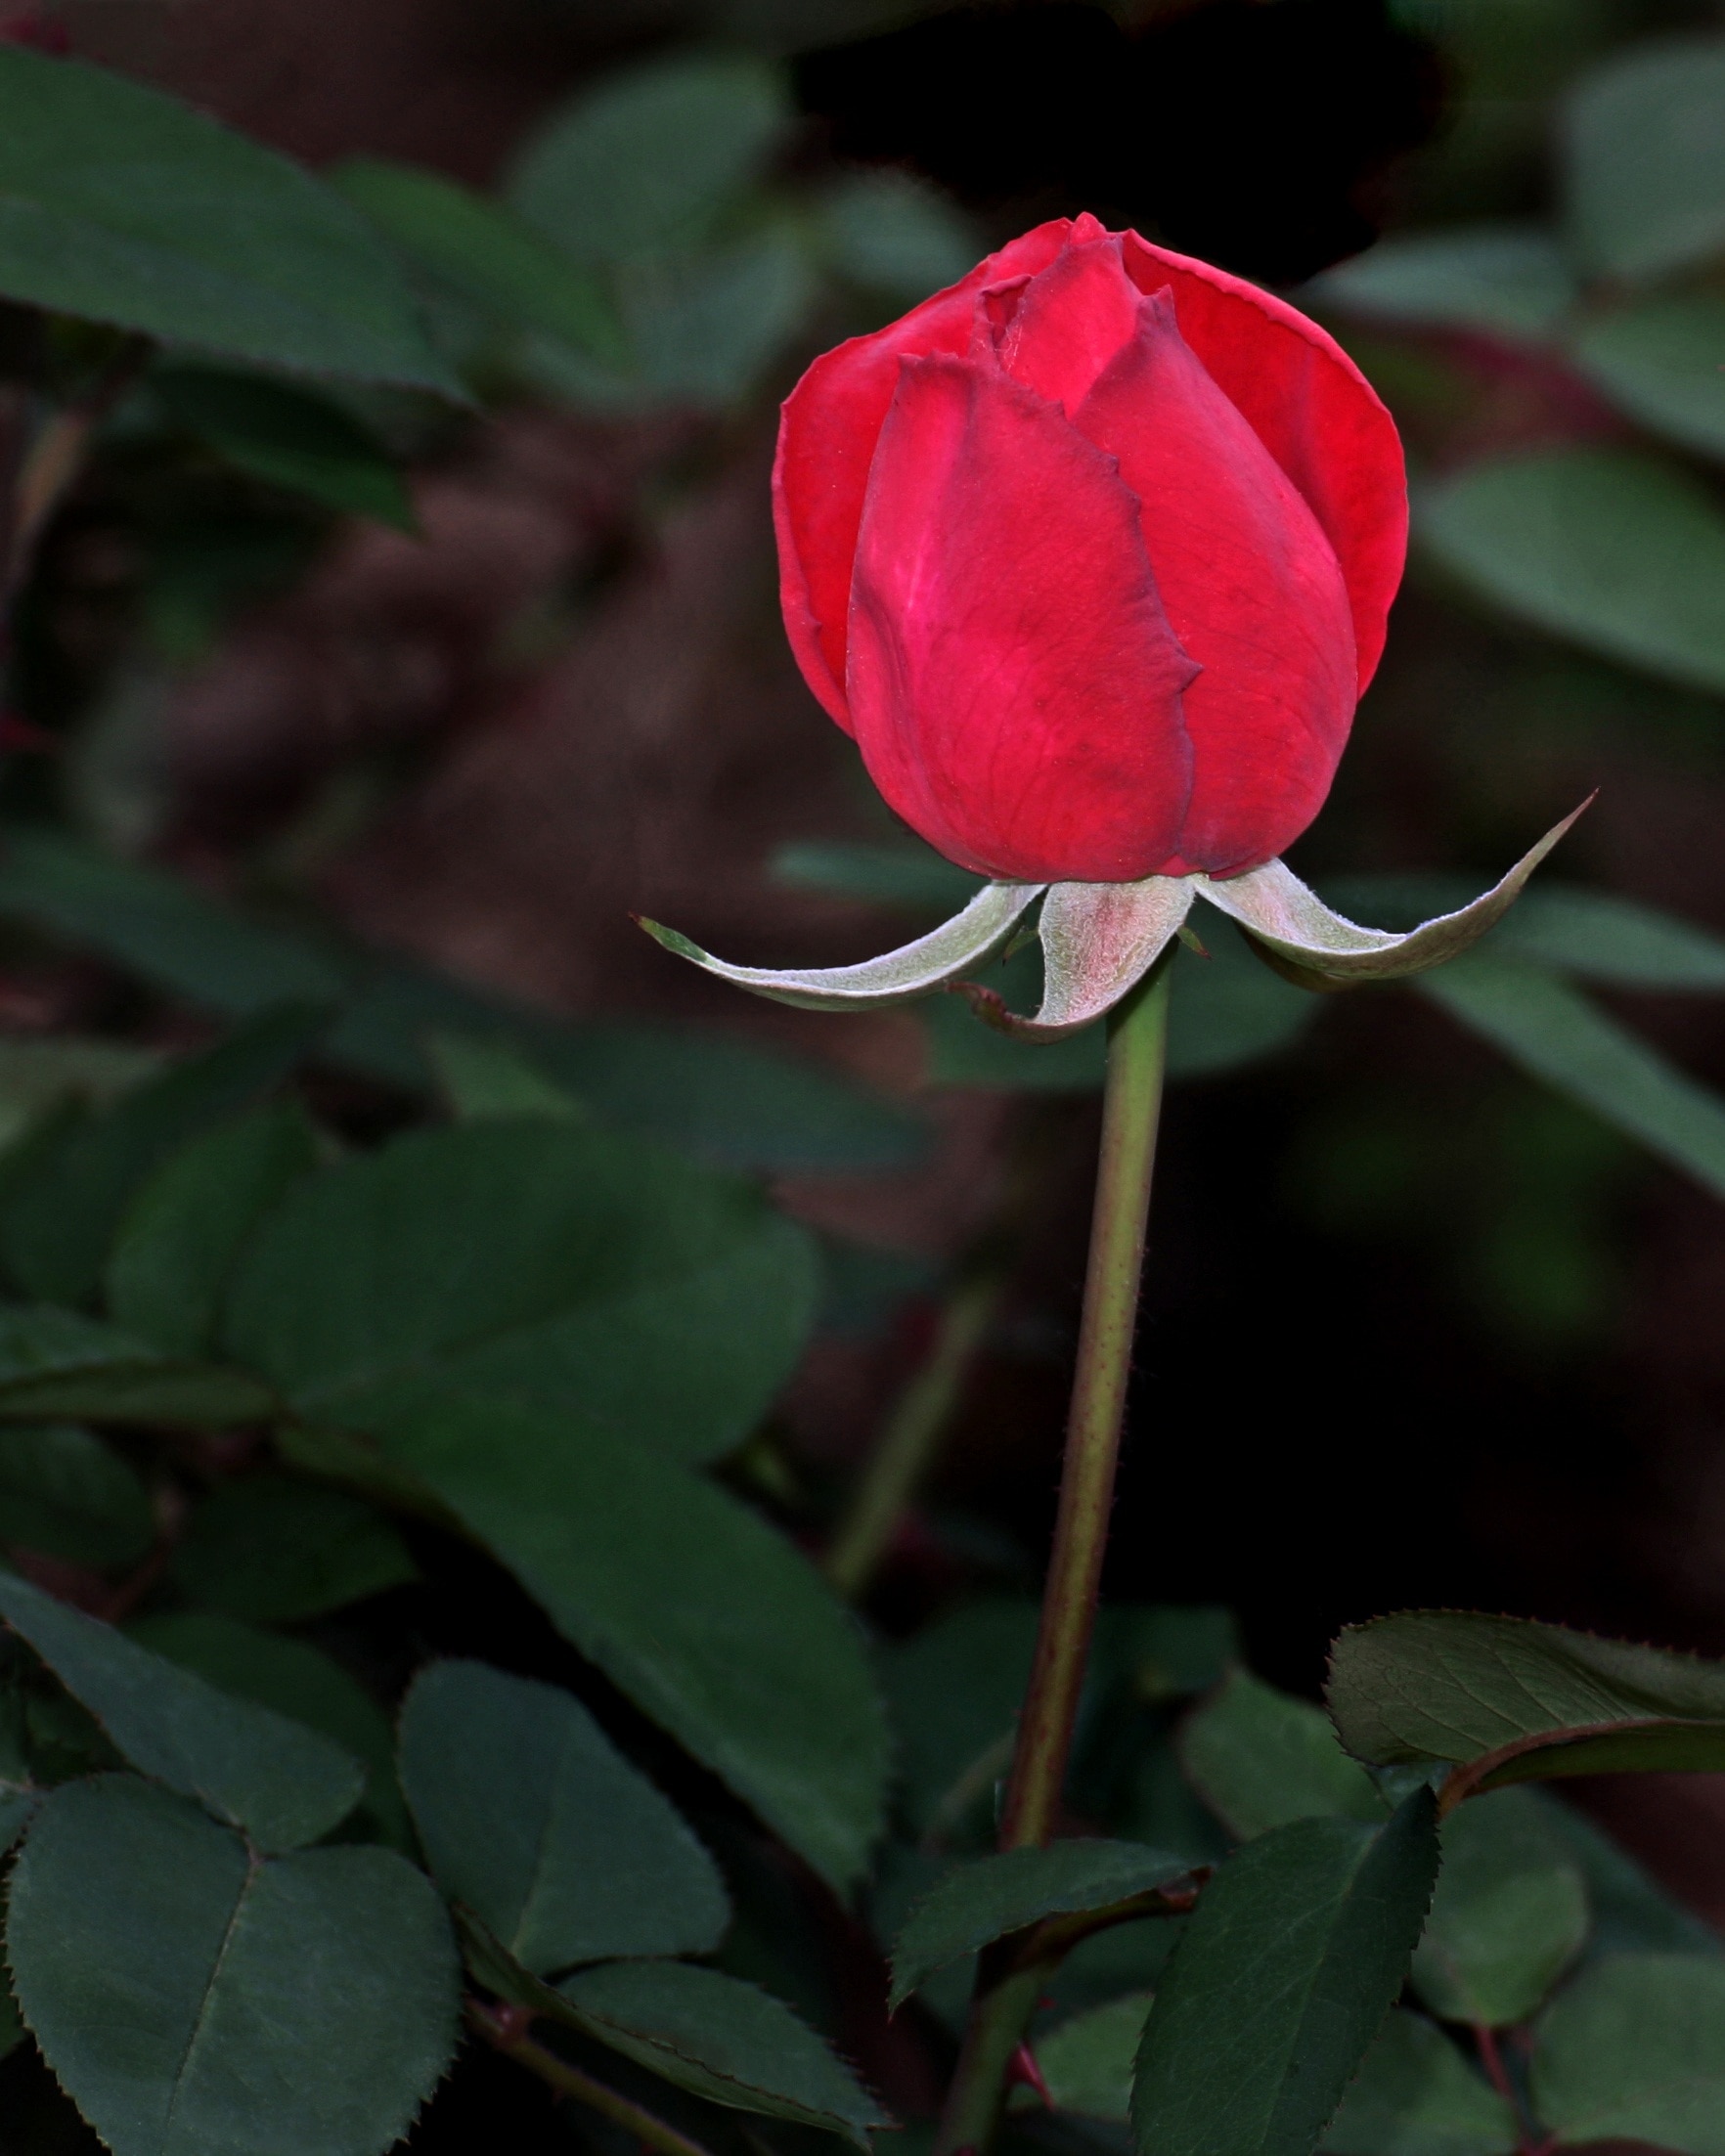 red flower beside green leaves